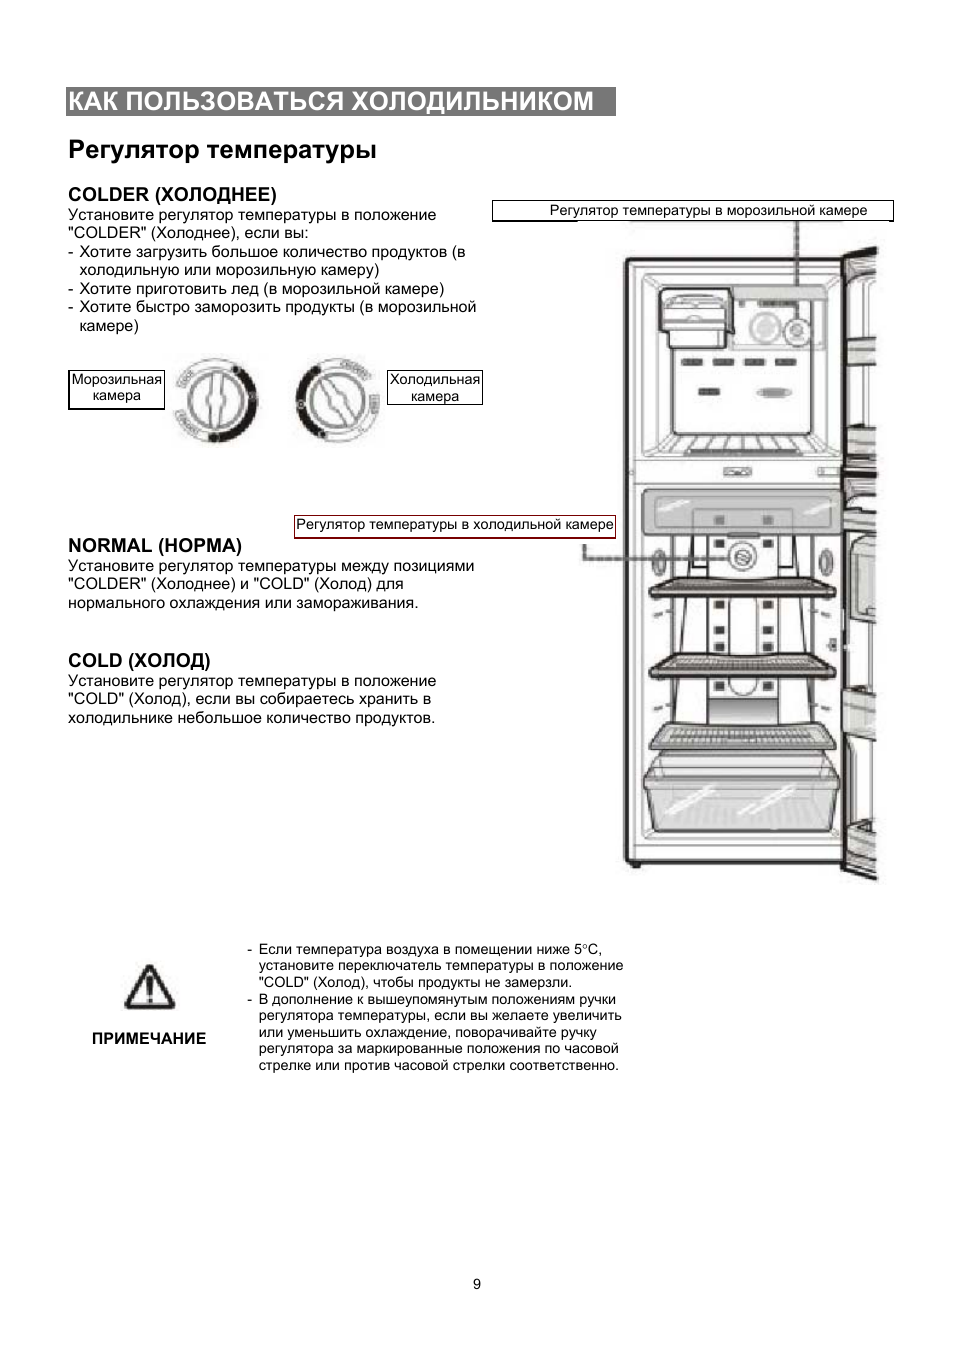 Как сделать диагностику и заменить термостат холодильника своими руками?